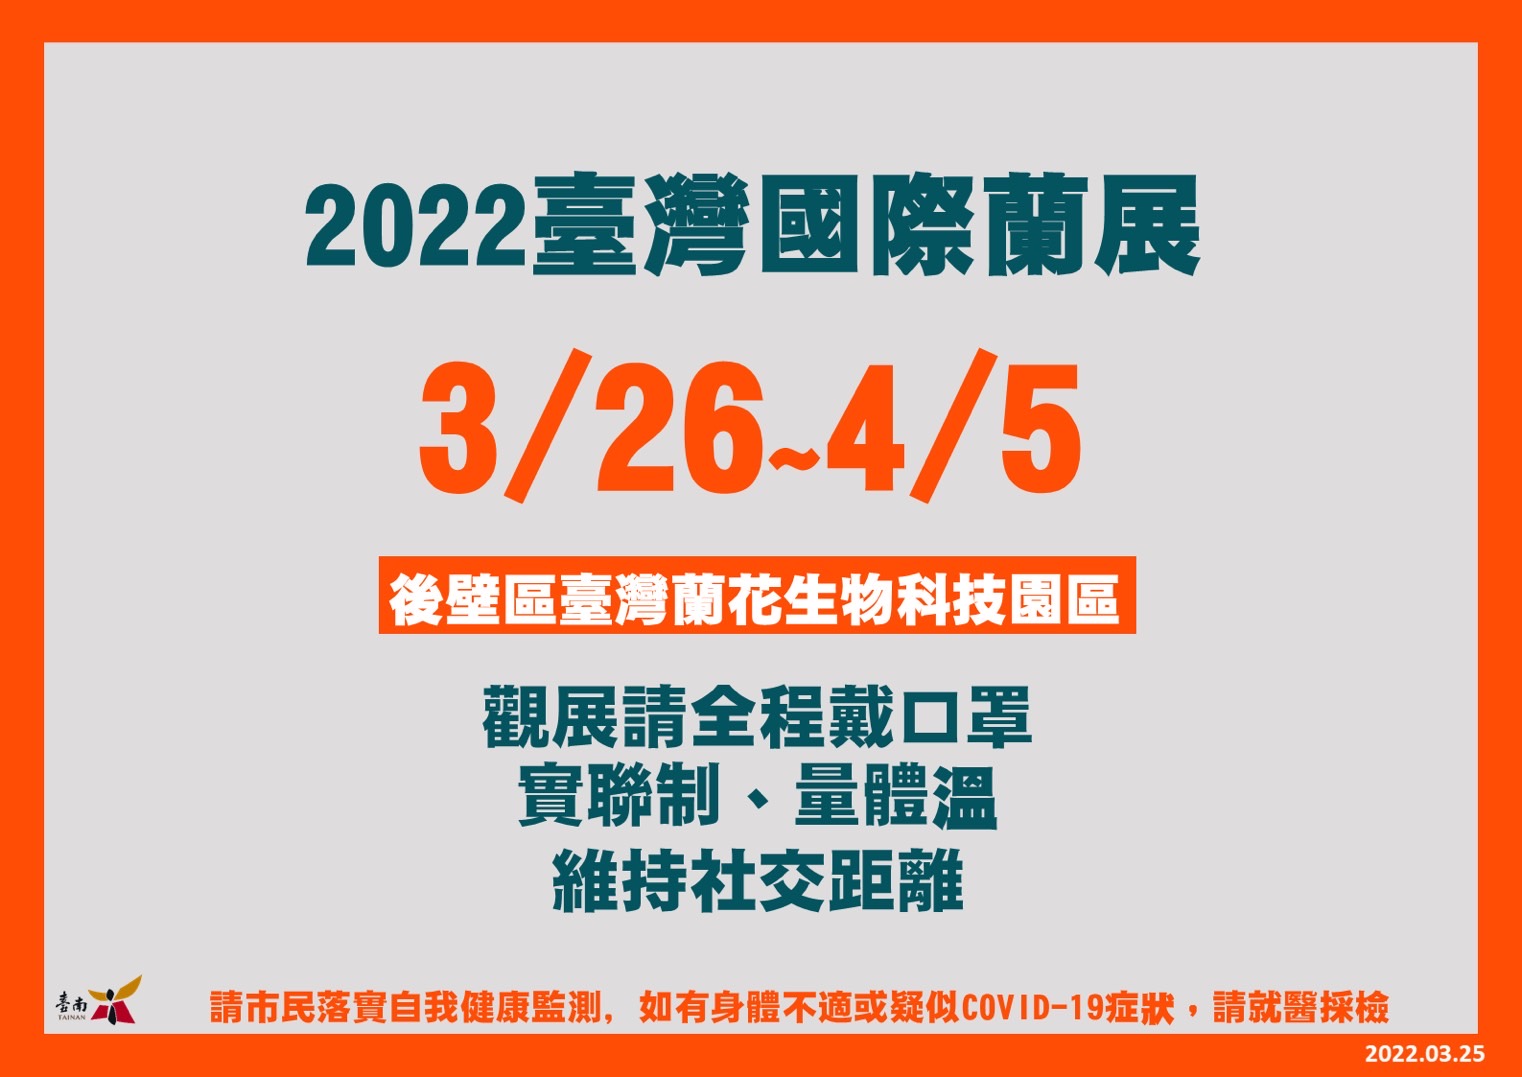 「2022臺灣國際蘭展」26日開展   市民觀展須落實個人防疫措施